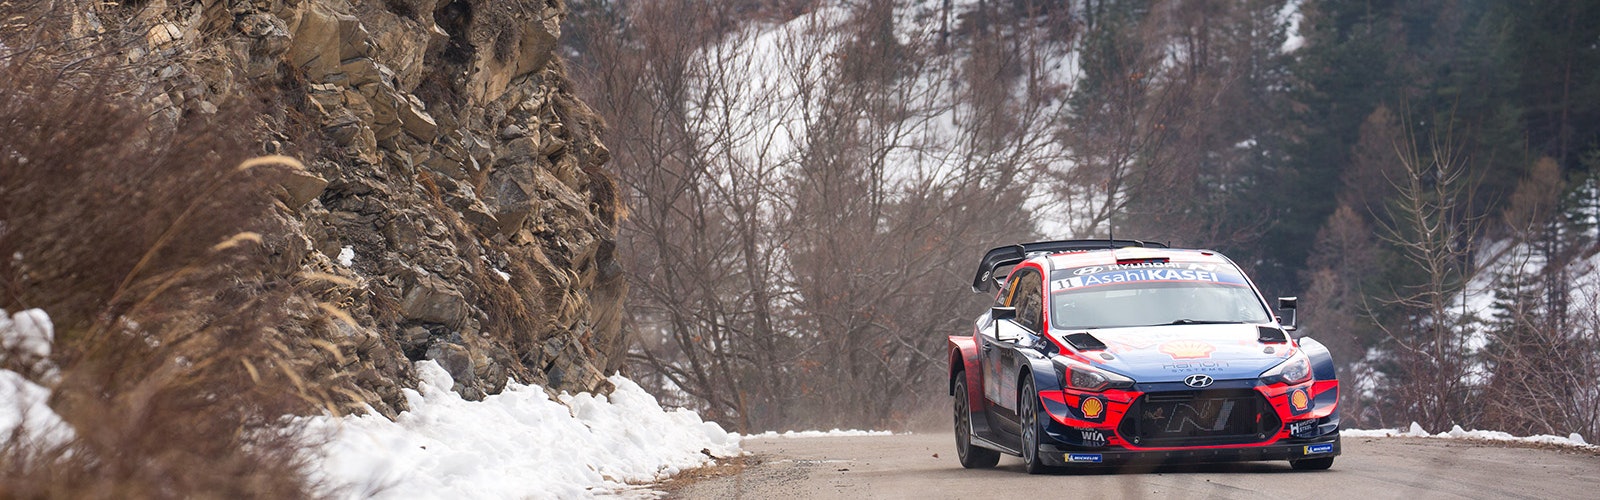 Thierry Neuville Hyundai Monte Carlo Rally 2020